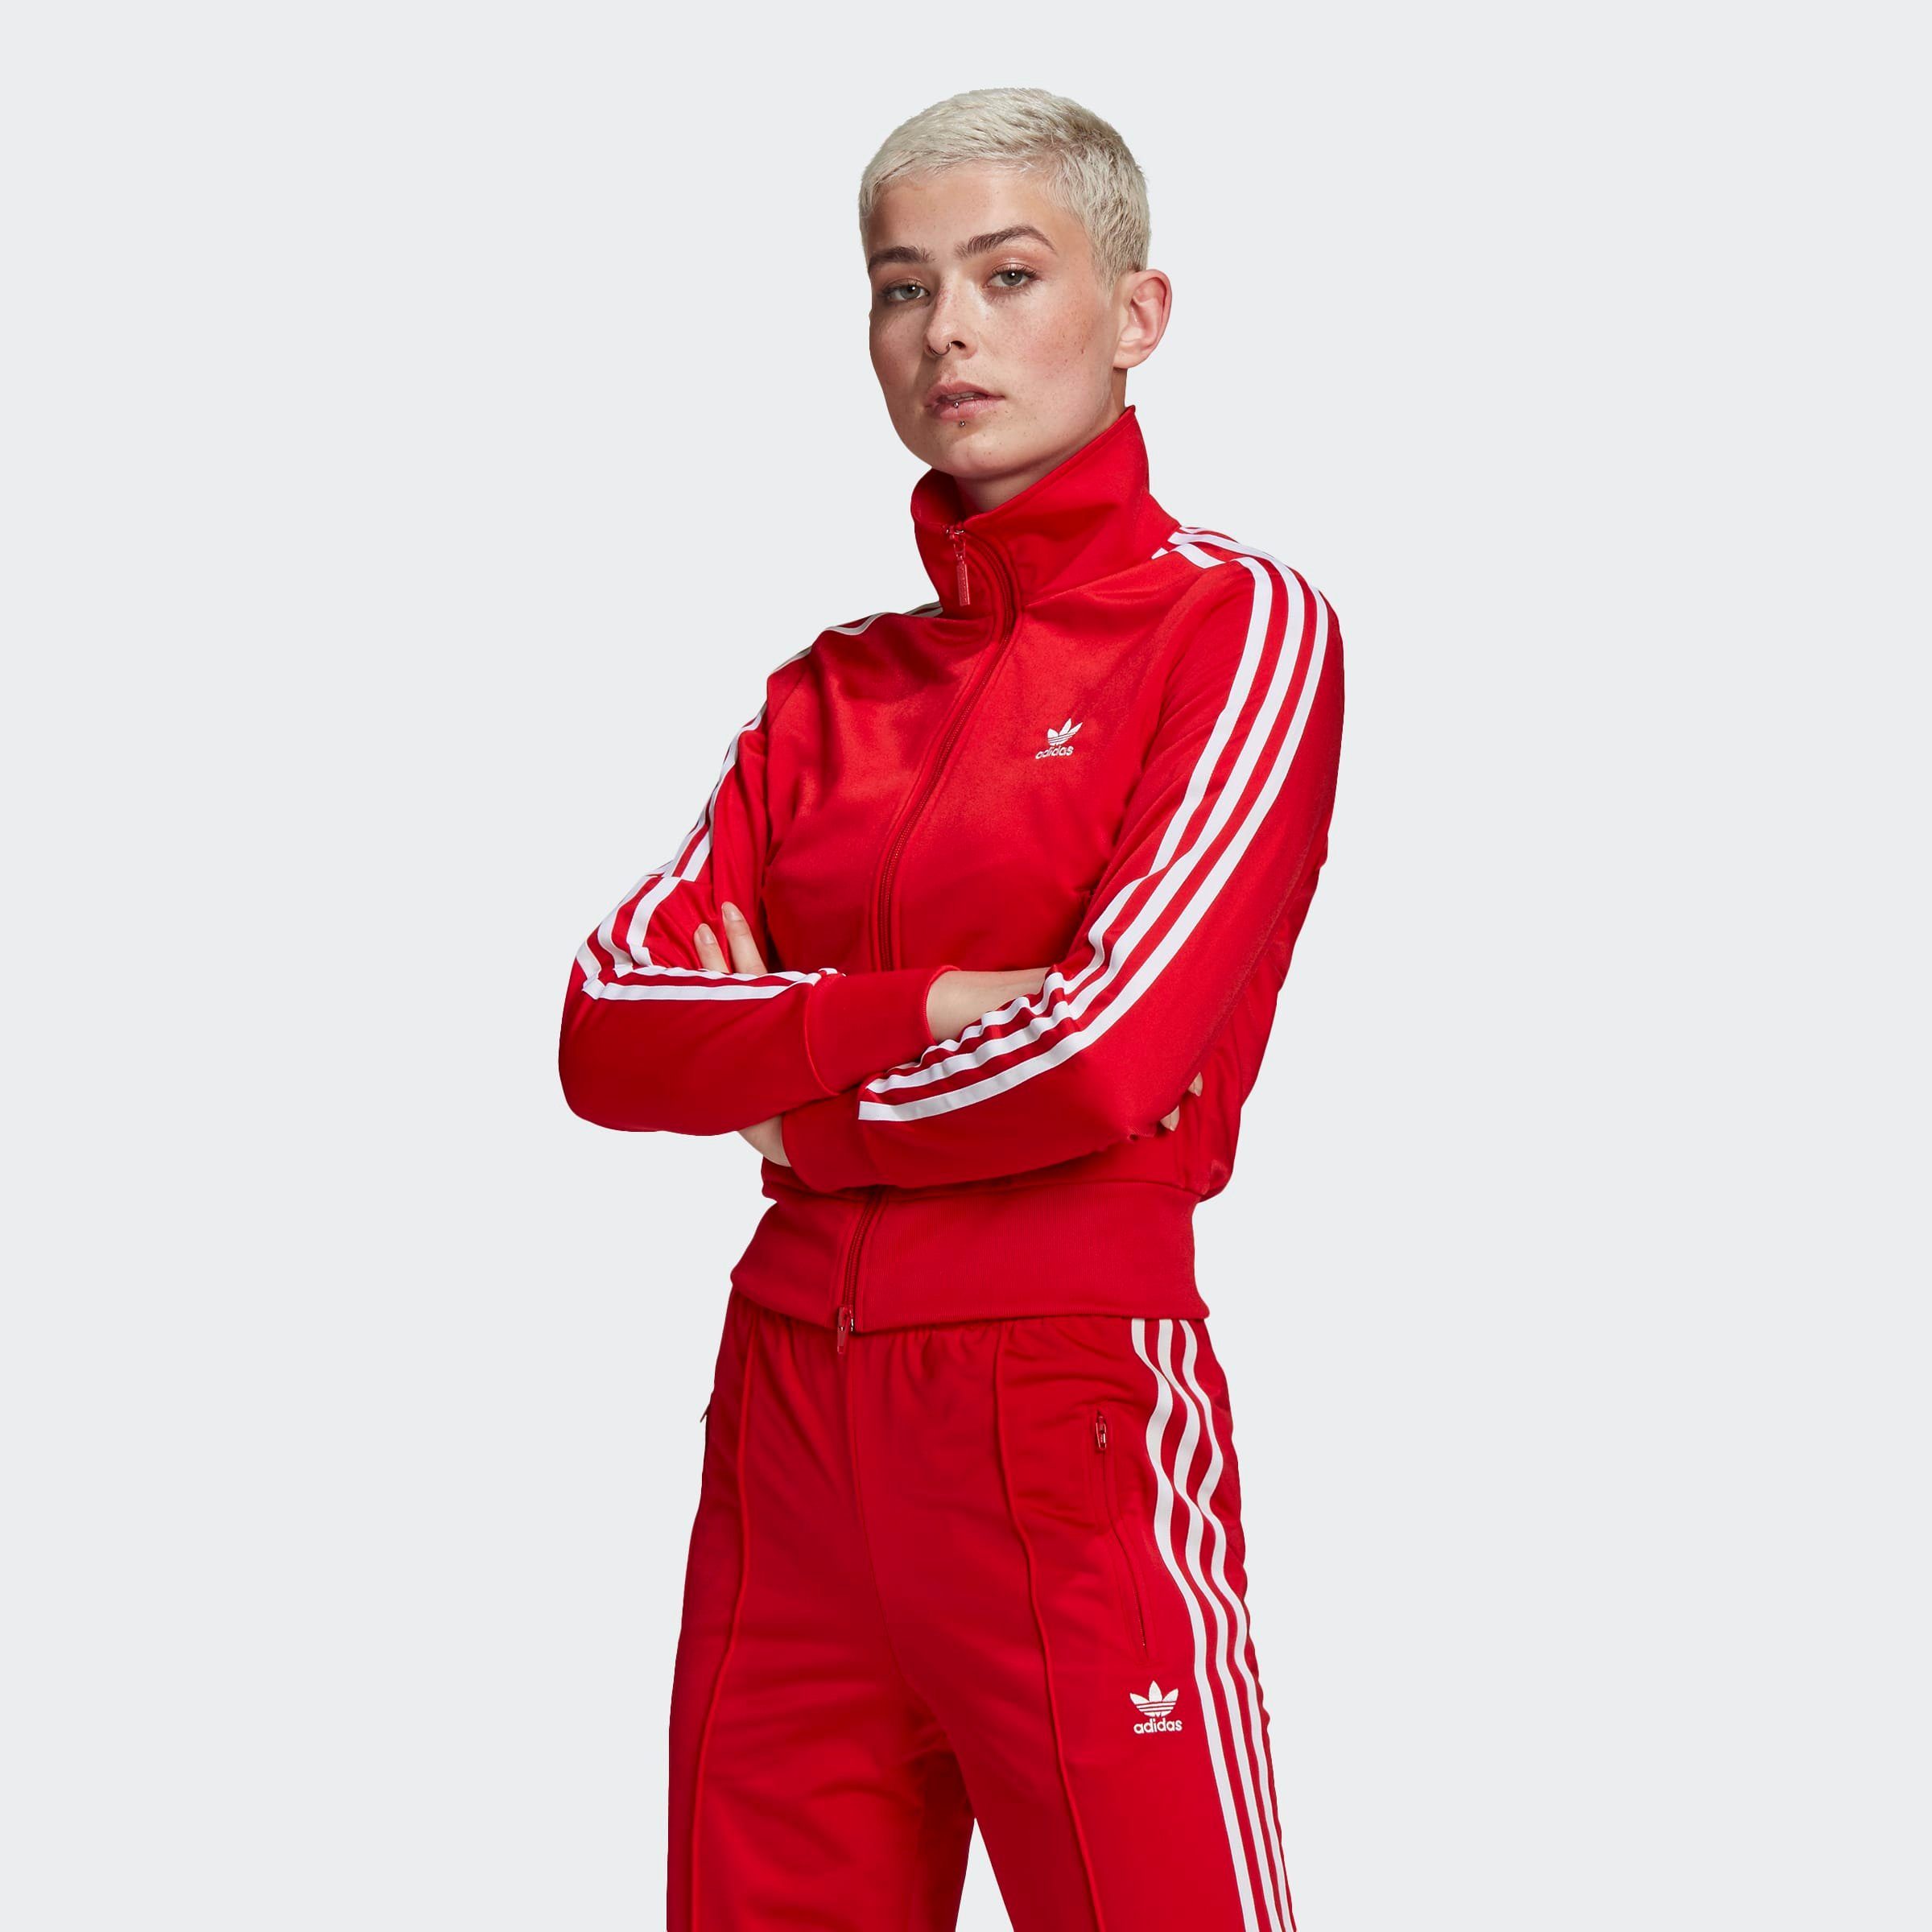 إنسانية مربى غير مخضرم adidas damen trainingsanzug rot Amazon -  remraamapartment.com